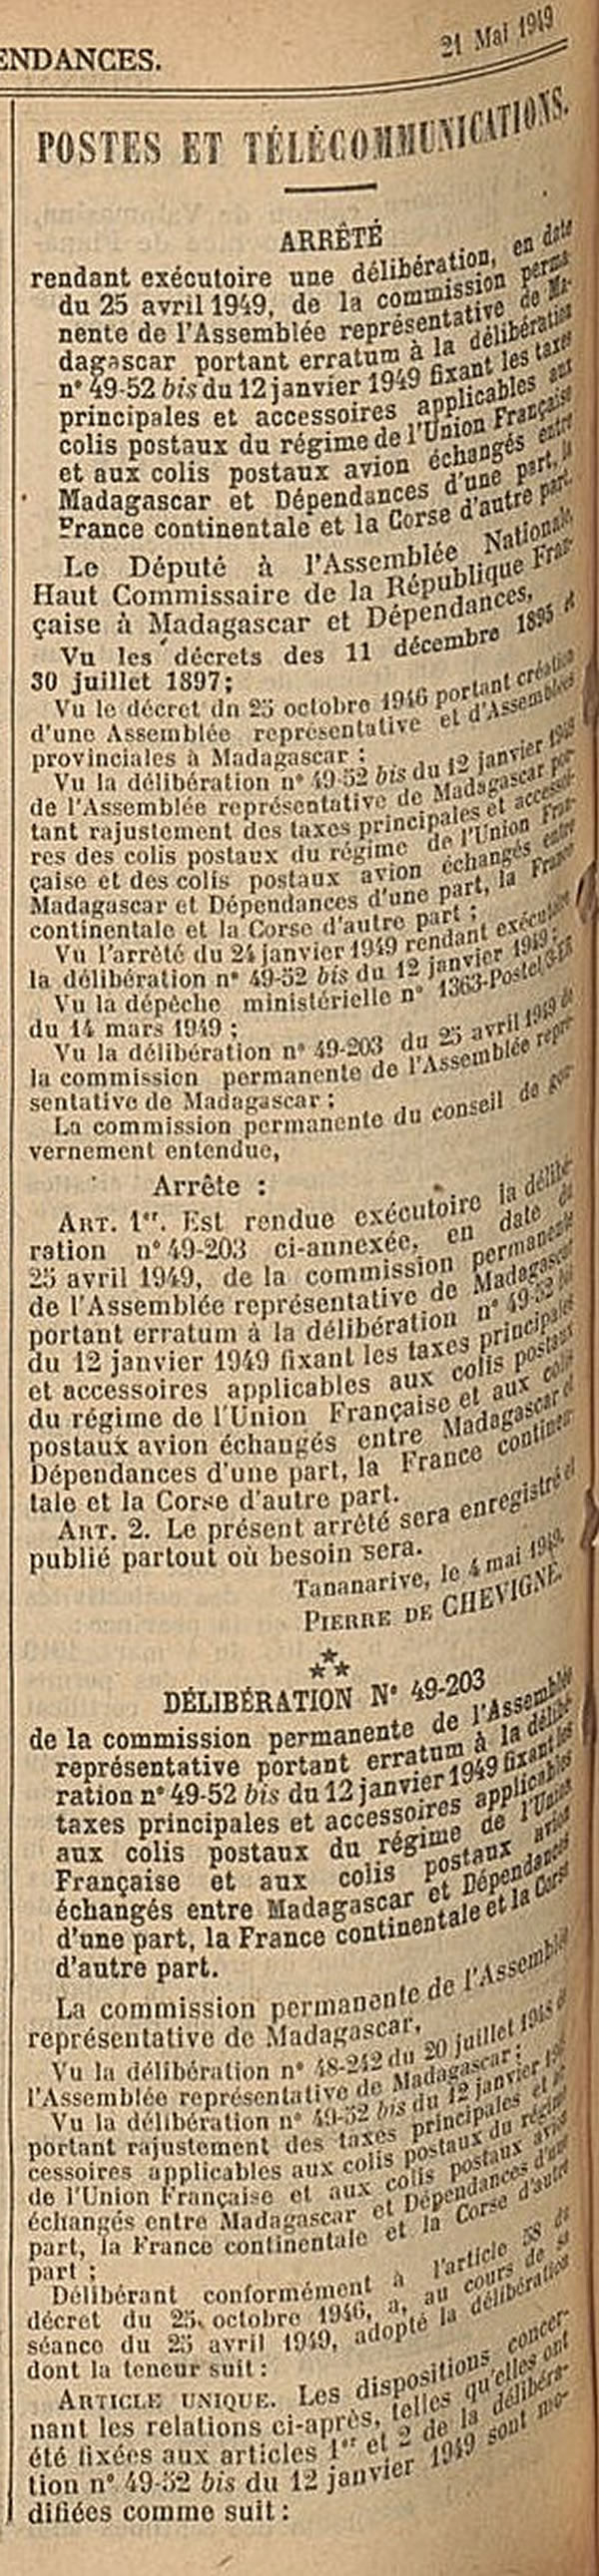 tarif colis postaux Union Française 4  mai 1949